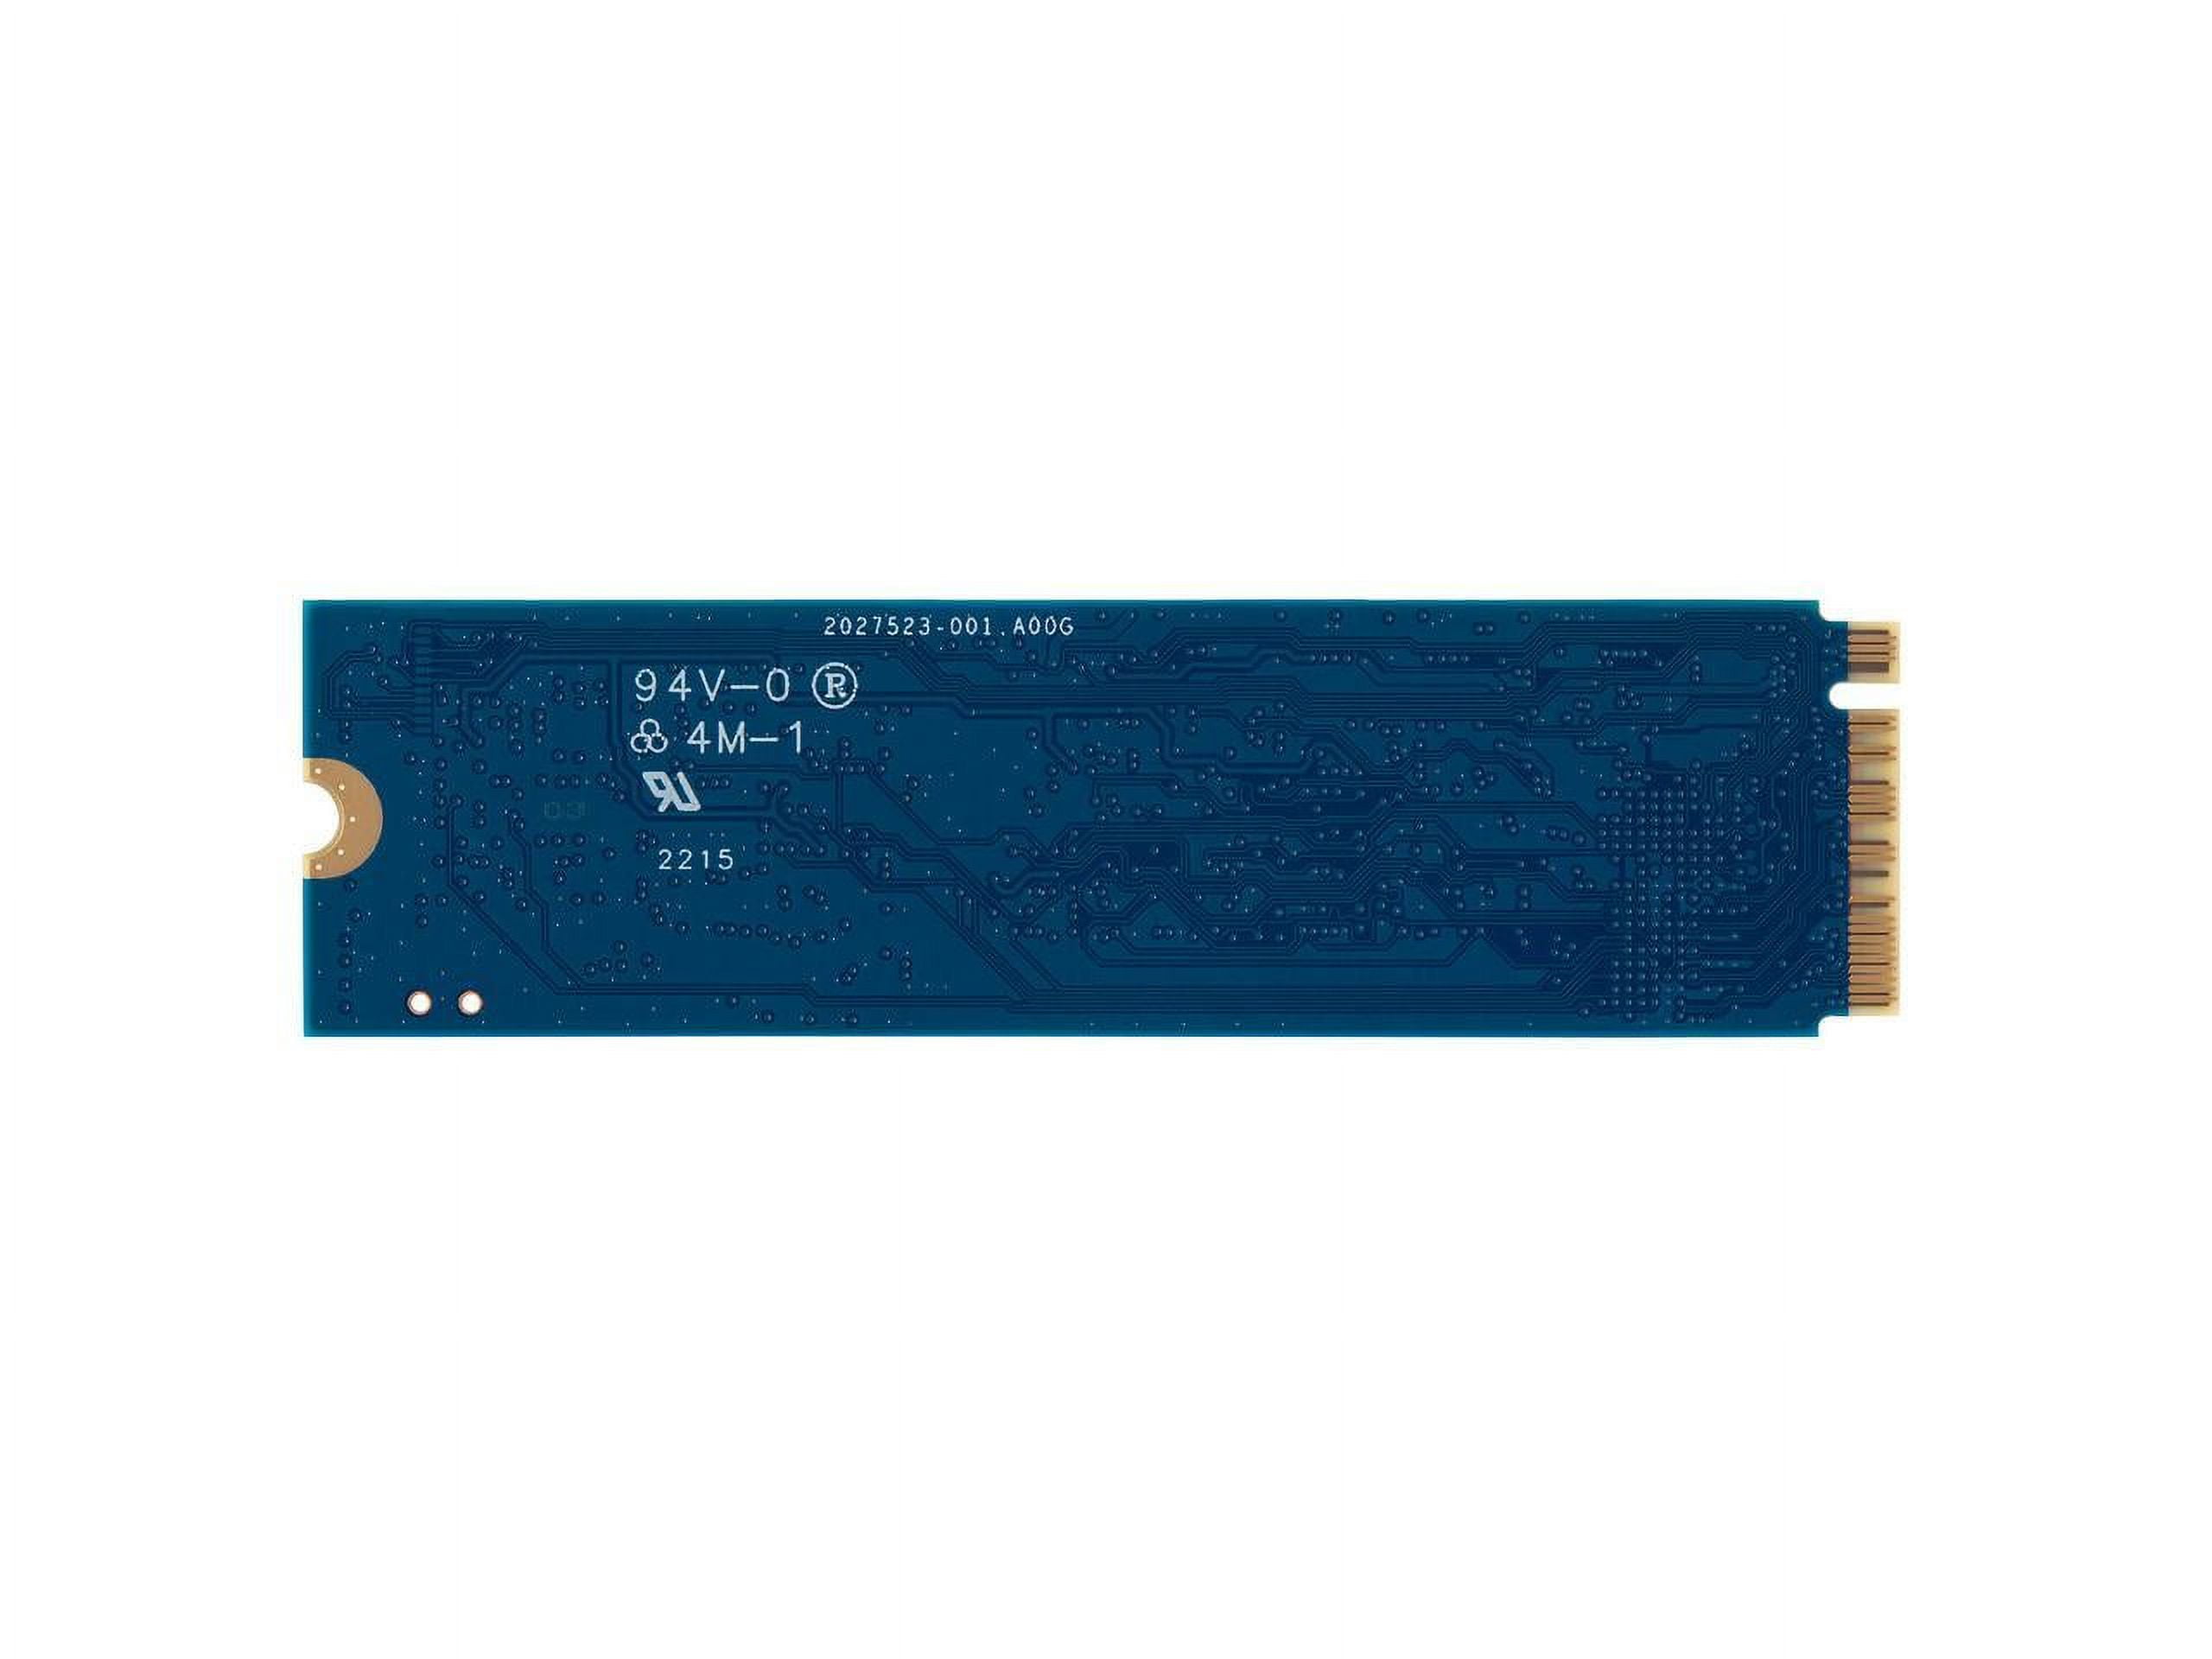 Kingston NV2 PCIe 4.0 NVMe SSD 1TB Internal M.2 2280 